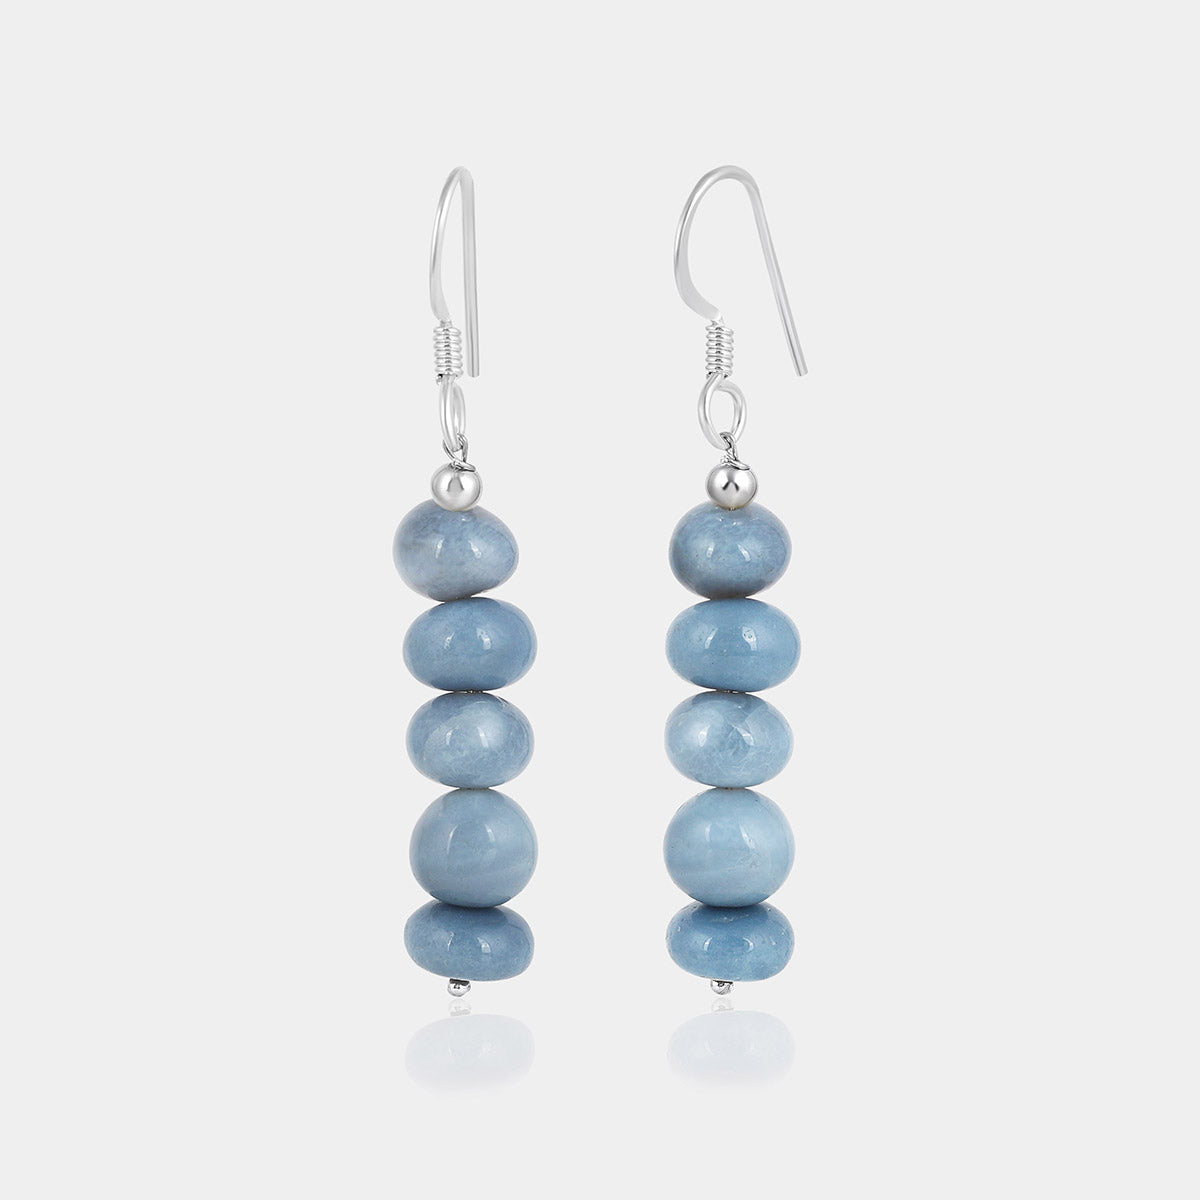 Blue Opal Beads Silver Dangle Earrings